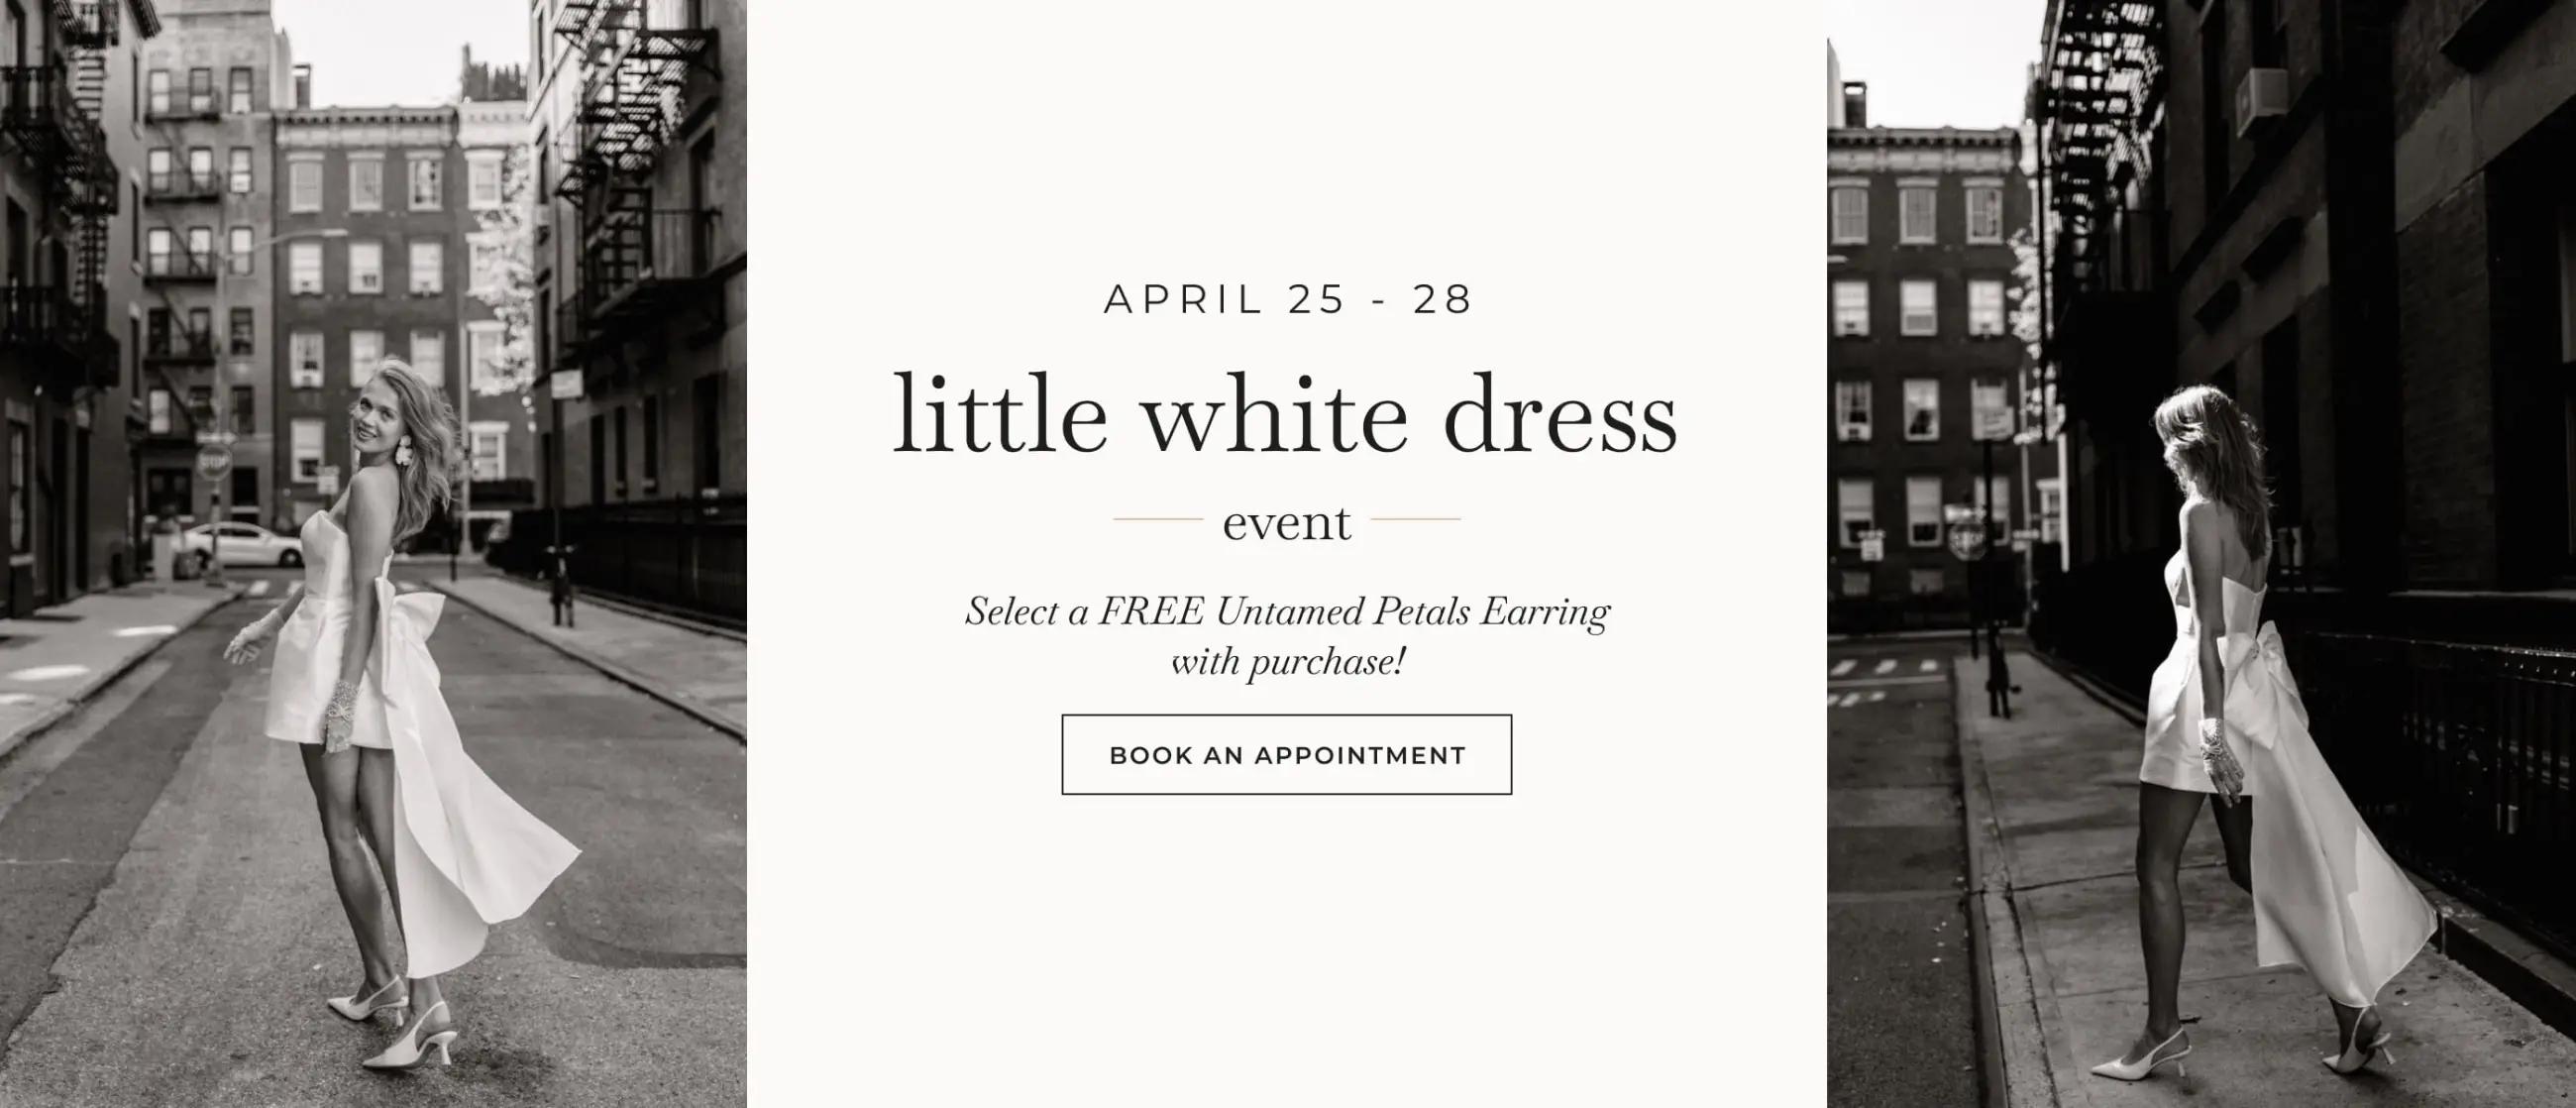 little white dress event banner desktop